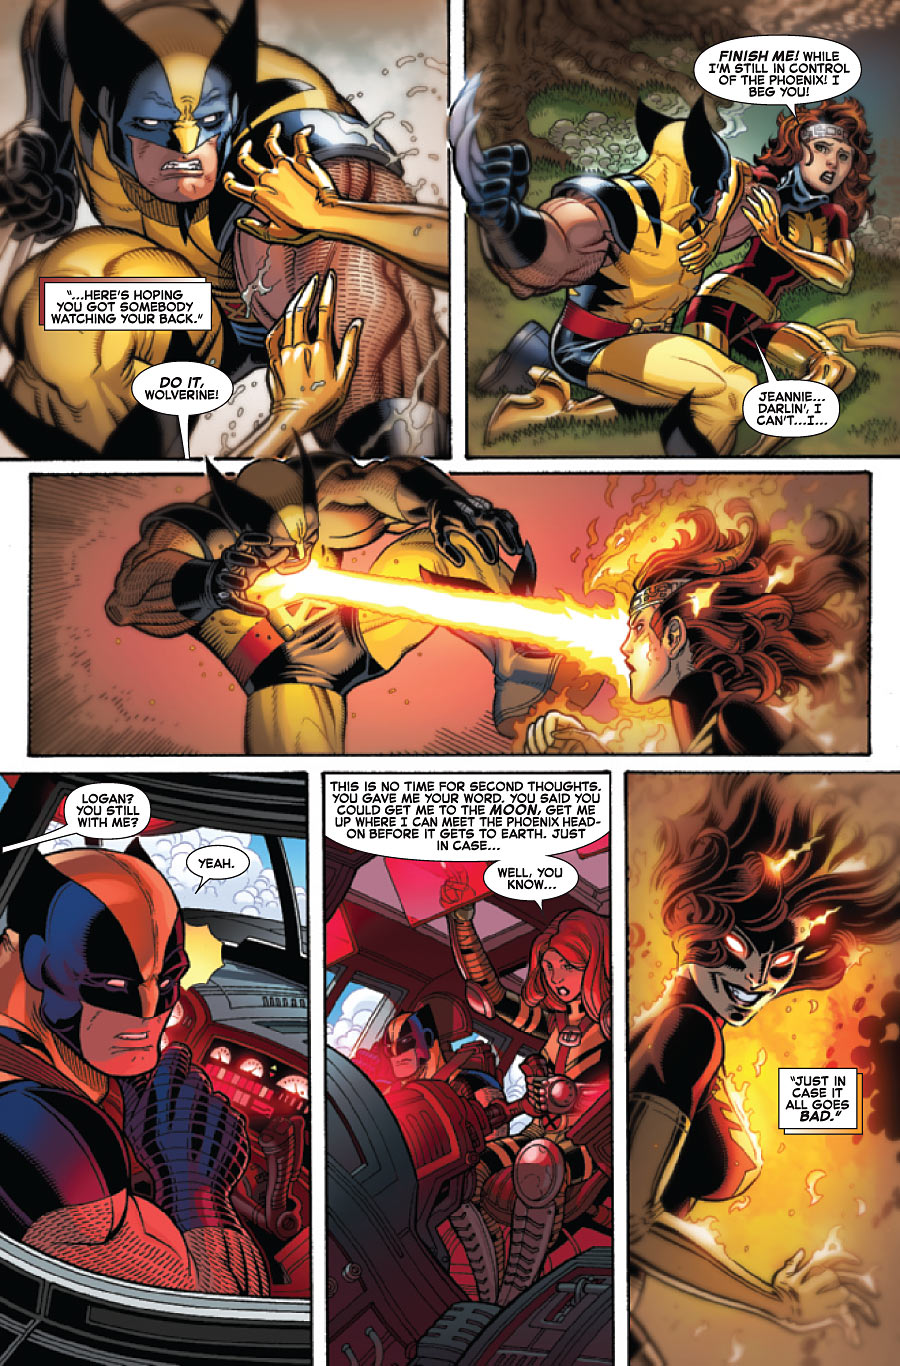 WOLVERINE & THE X-MEN #11 - AvX - Marvel Comics - Blog Farofeiros